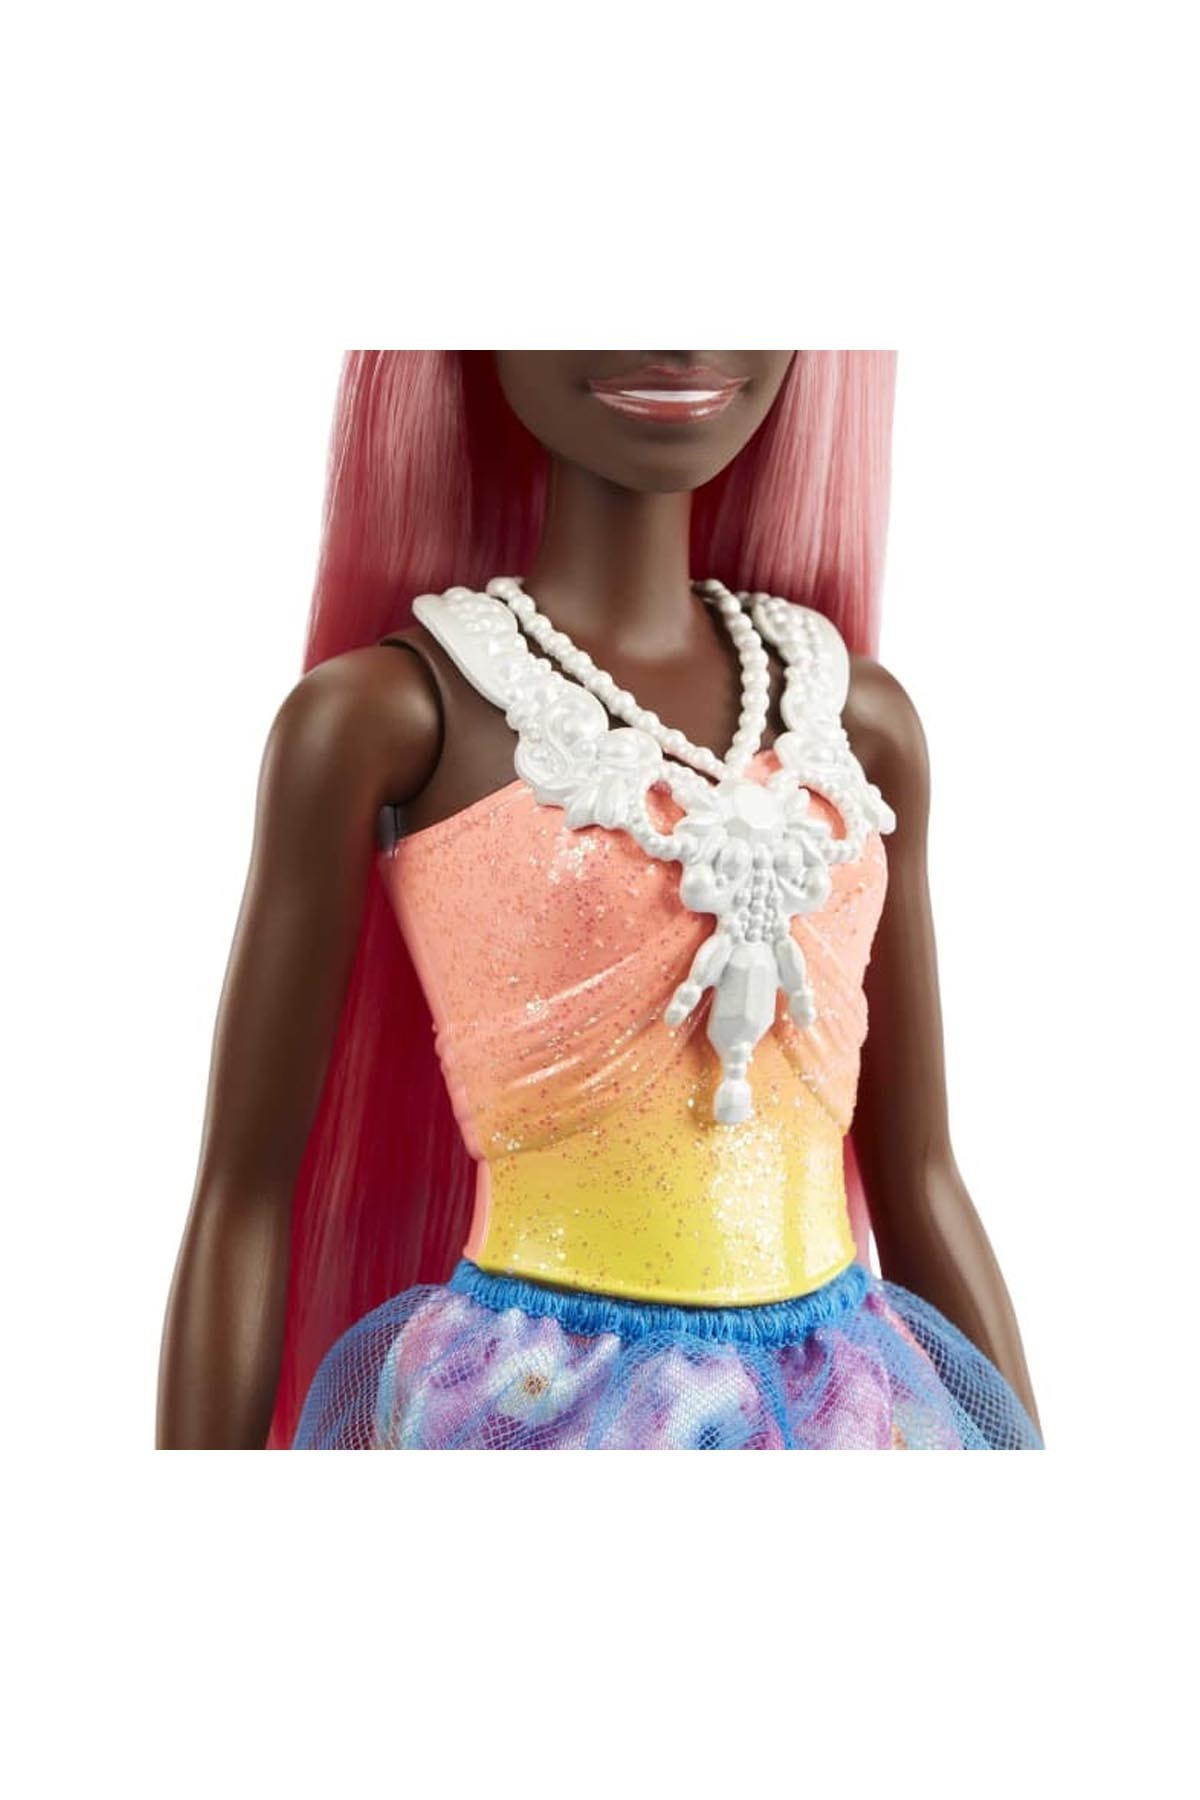 Barbie Dreamtopia Prenses Bebekler Serisi HGR14